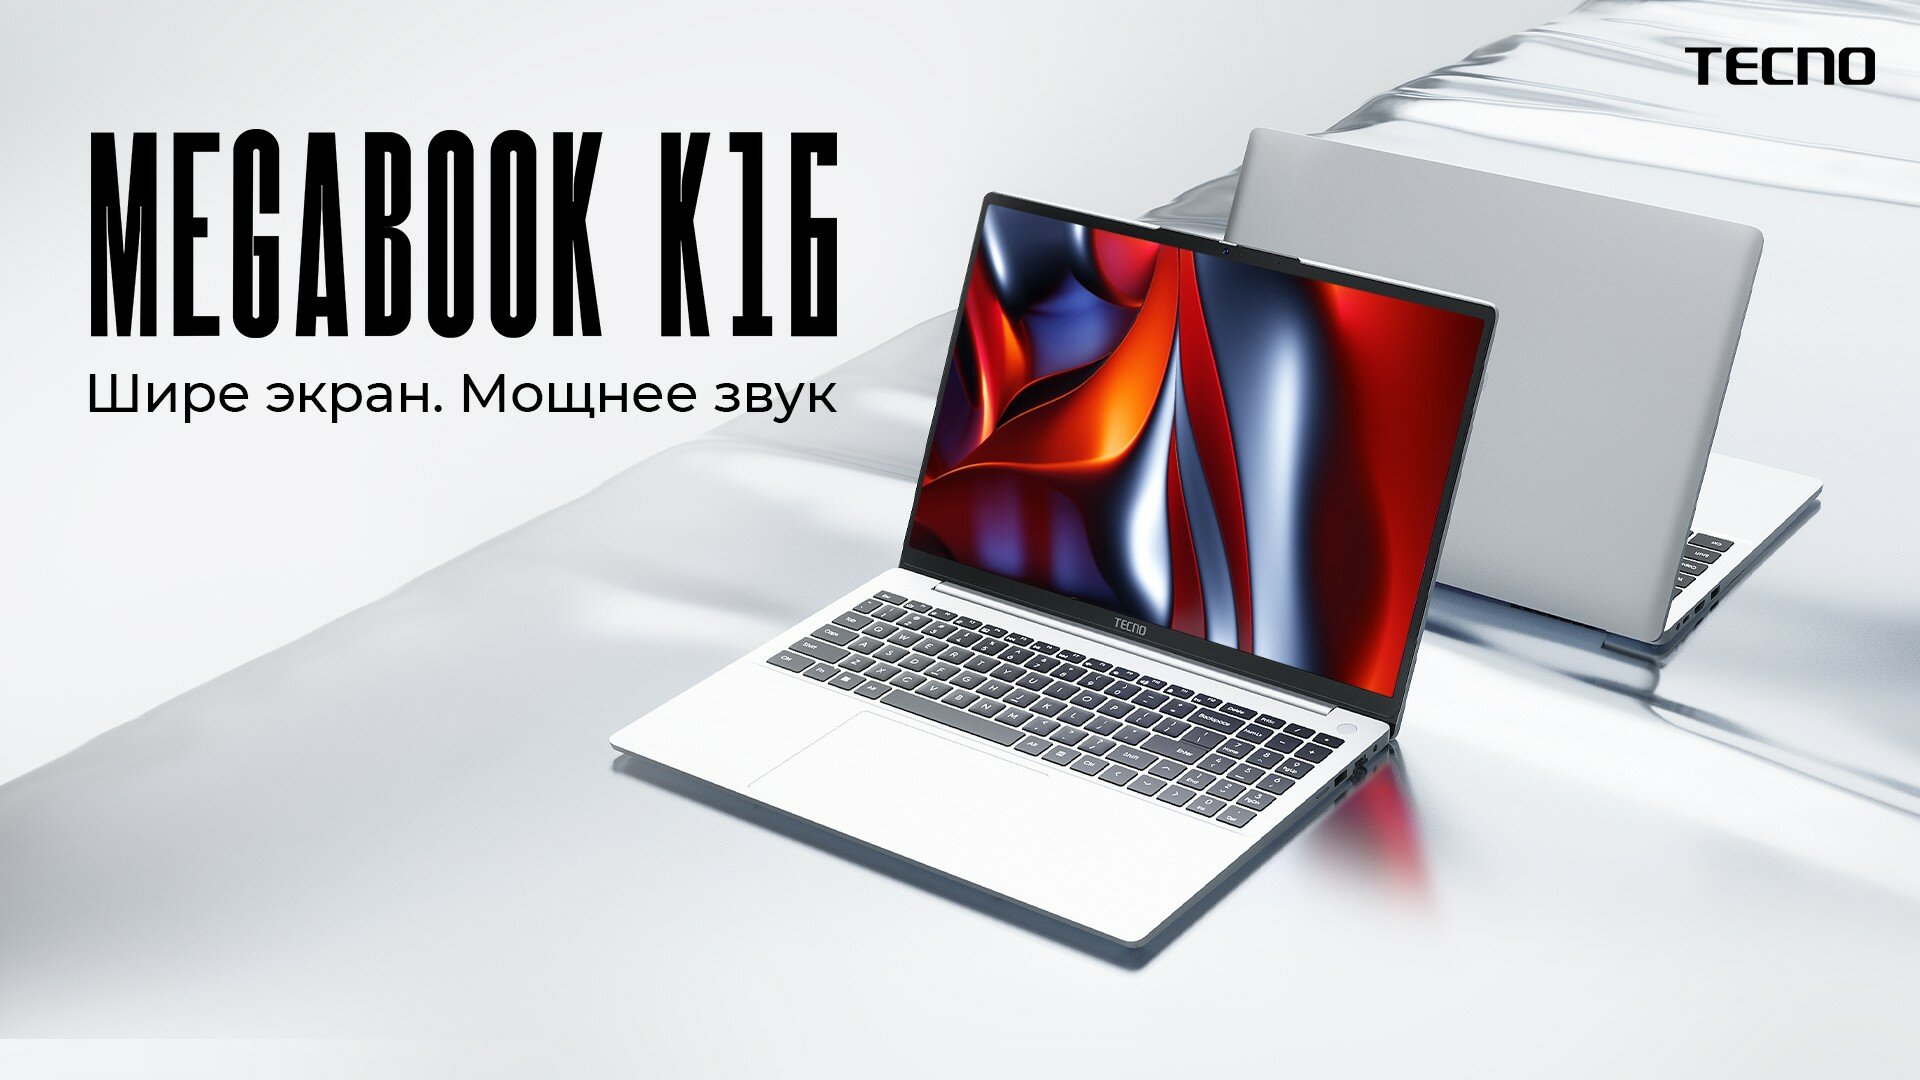 TECNO представила в России серию ноутбуков MEGABOOK K: мощнее, громче, автономнее